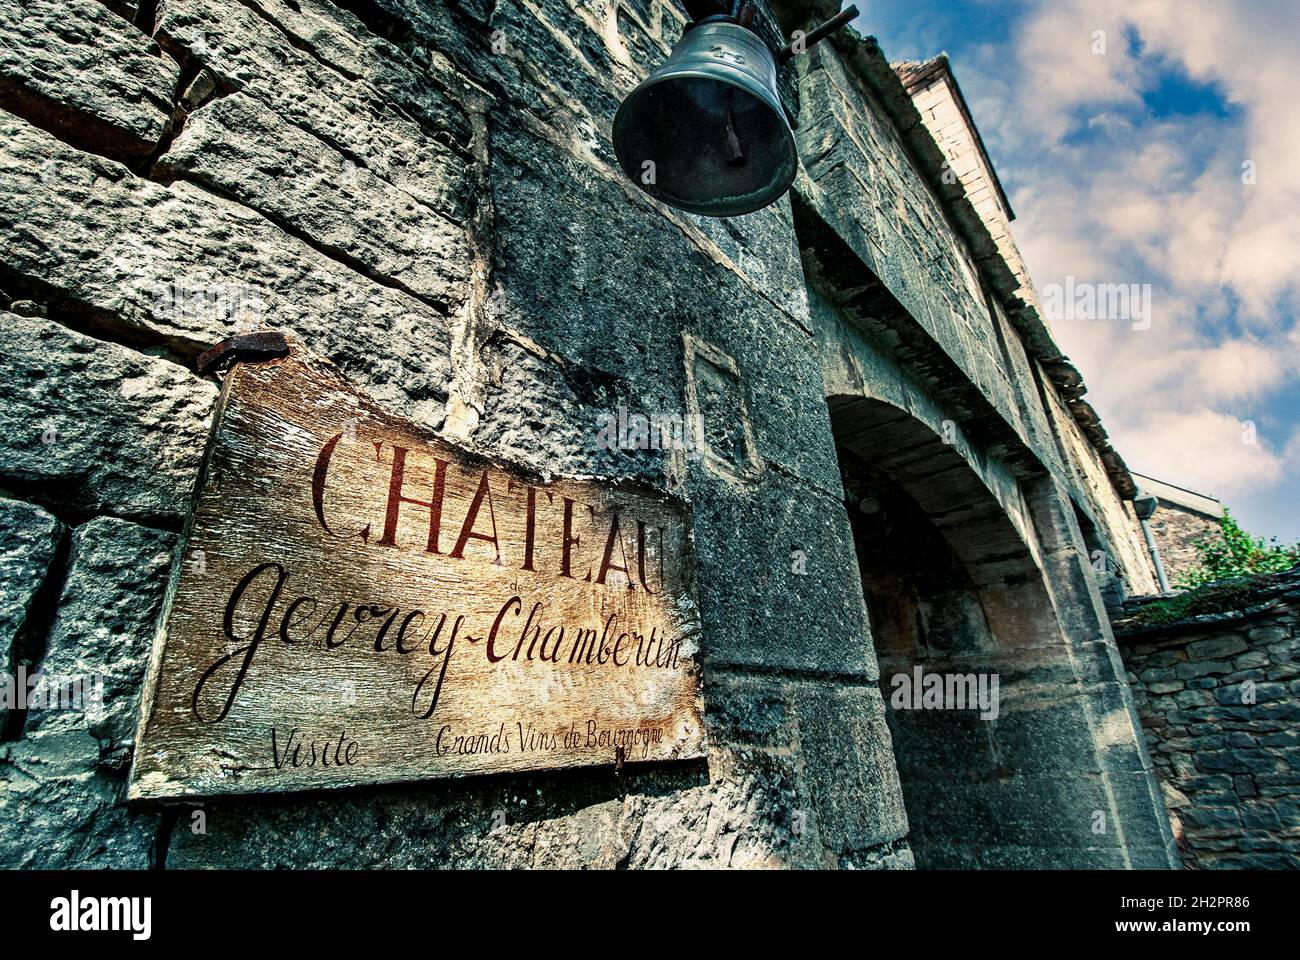 Château de Gevrey-Chambertin panneau rustiques avec des intempéries à l'extérieur de l'entrée du château de Gevrey-Chambertin avec une cloche pour annoncer les visiteurs Bourgogne Côte d'Or France Banque D'Images